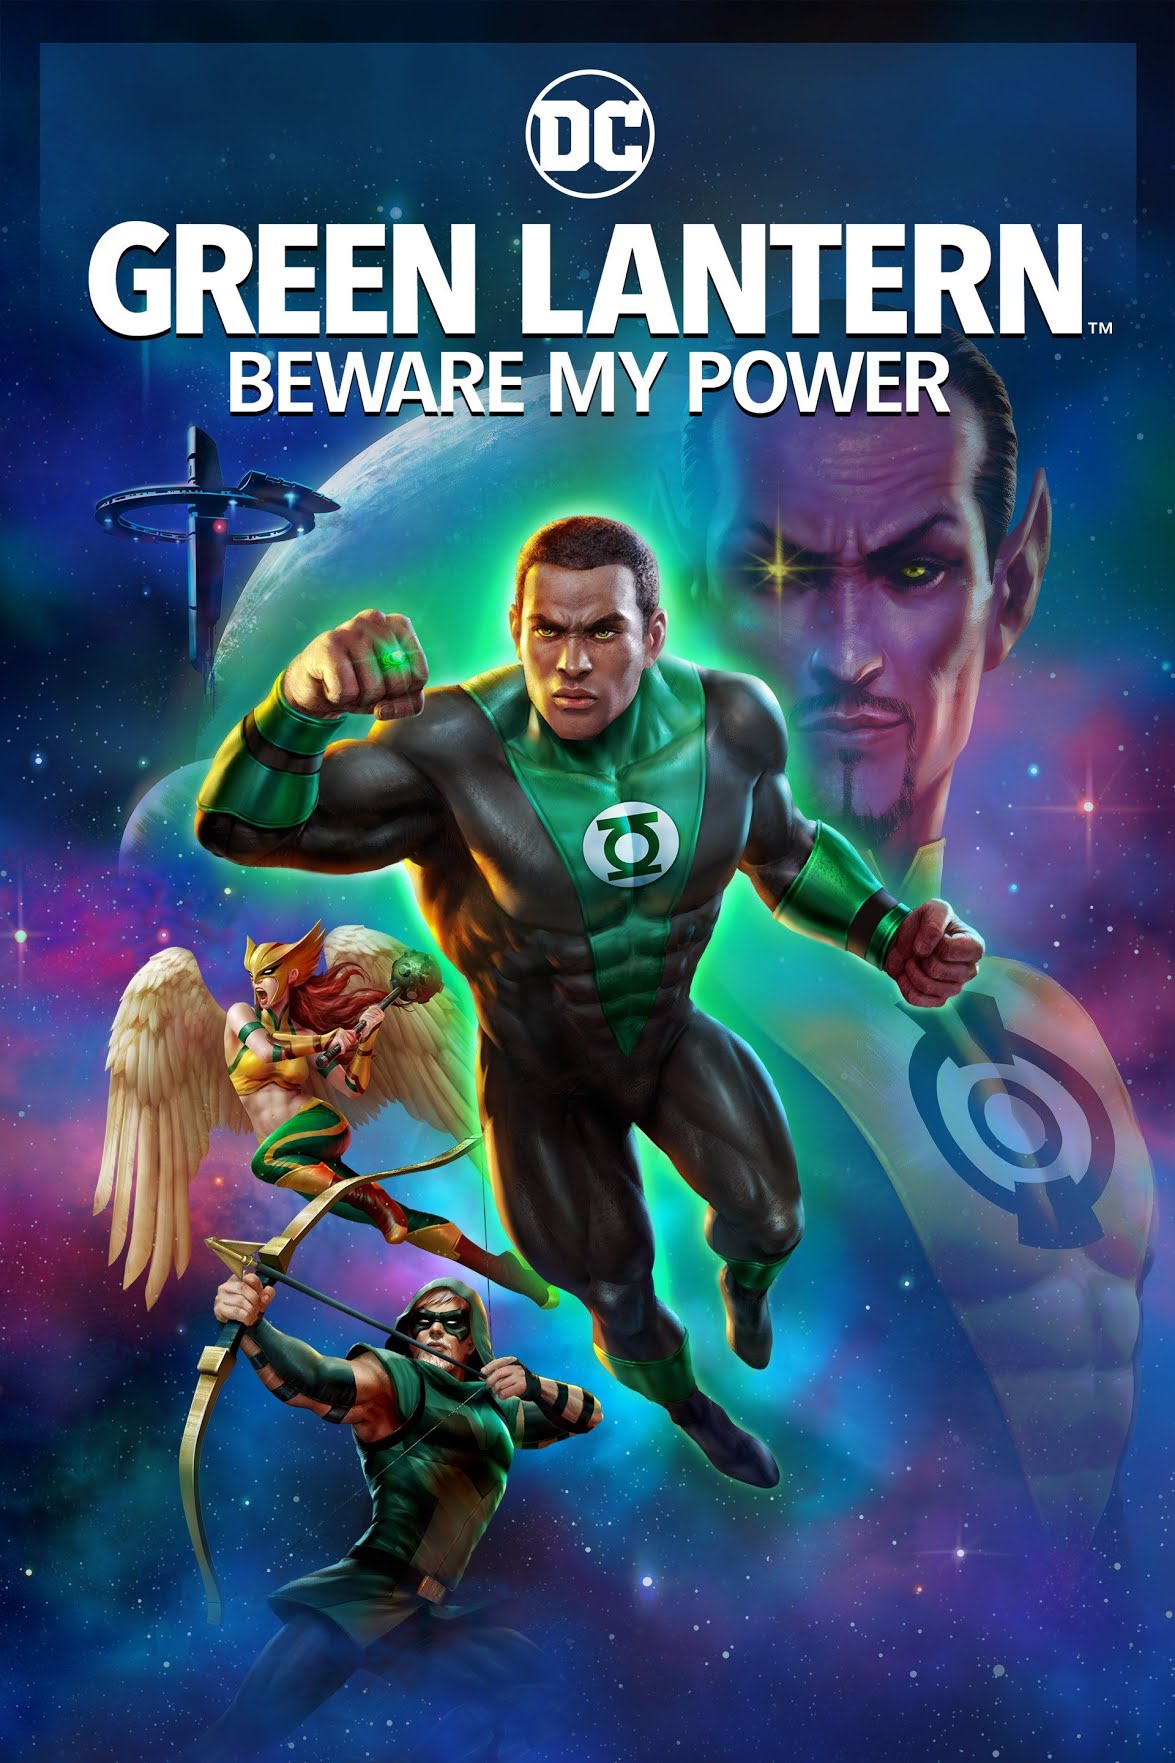 [ฝรั่ง] Green Lantern: Beware My Power (2022) กรีนแลนเทิร์น บีแว มาย เพาเวอร์ [1080p] [พากย์อังกฤษ 5.1] [Soundtrack บรรยายไทย + อังกฤษ] [เสียงอังกฤษ + ซับไทย] [USERLOAD]